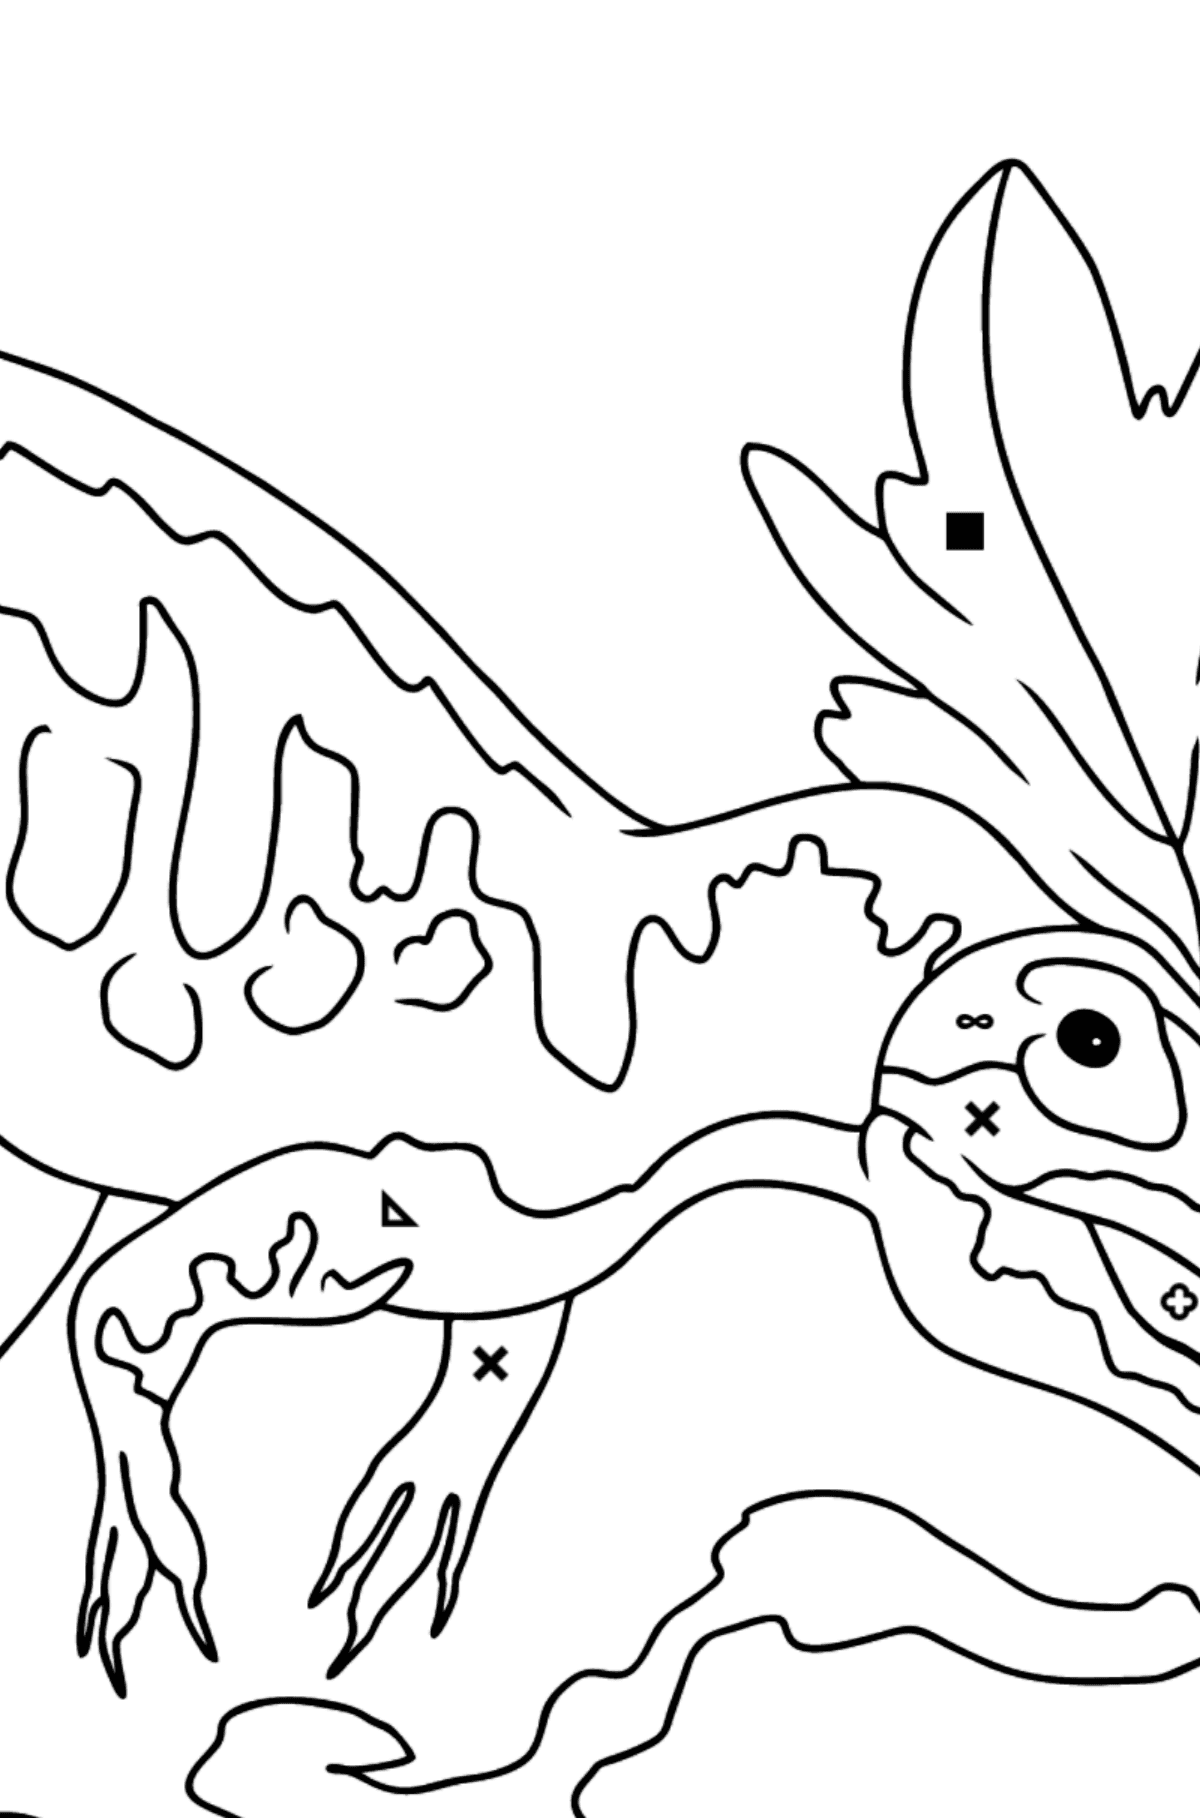 Desenho de Alossauro para Colorir - Colorir por Símbolos para Crianças